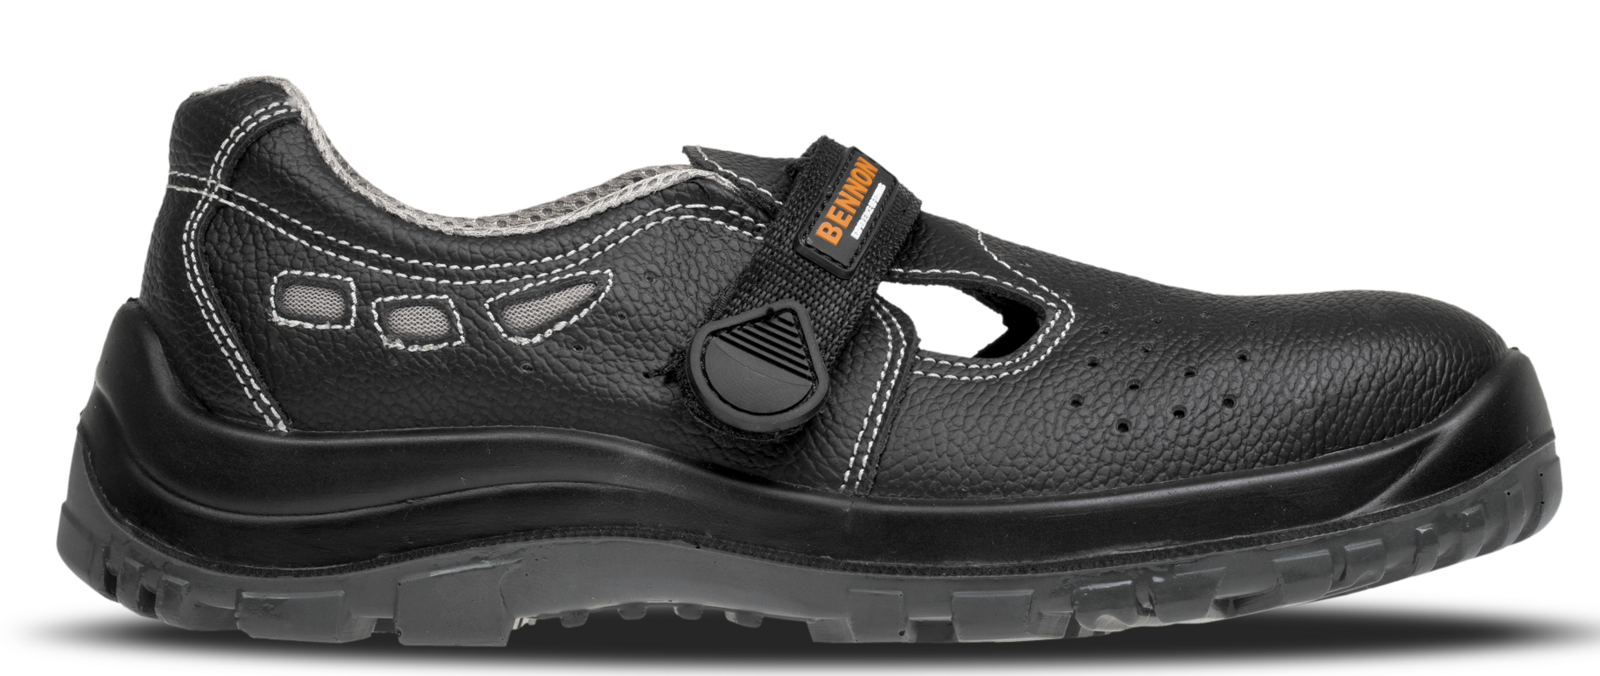 Bezpečnostné sandále Bennon Basic S1 - veľkosť: 43, farba: čierna